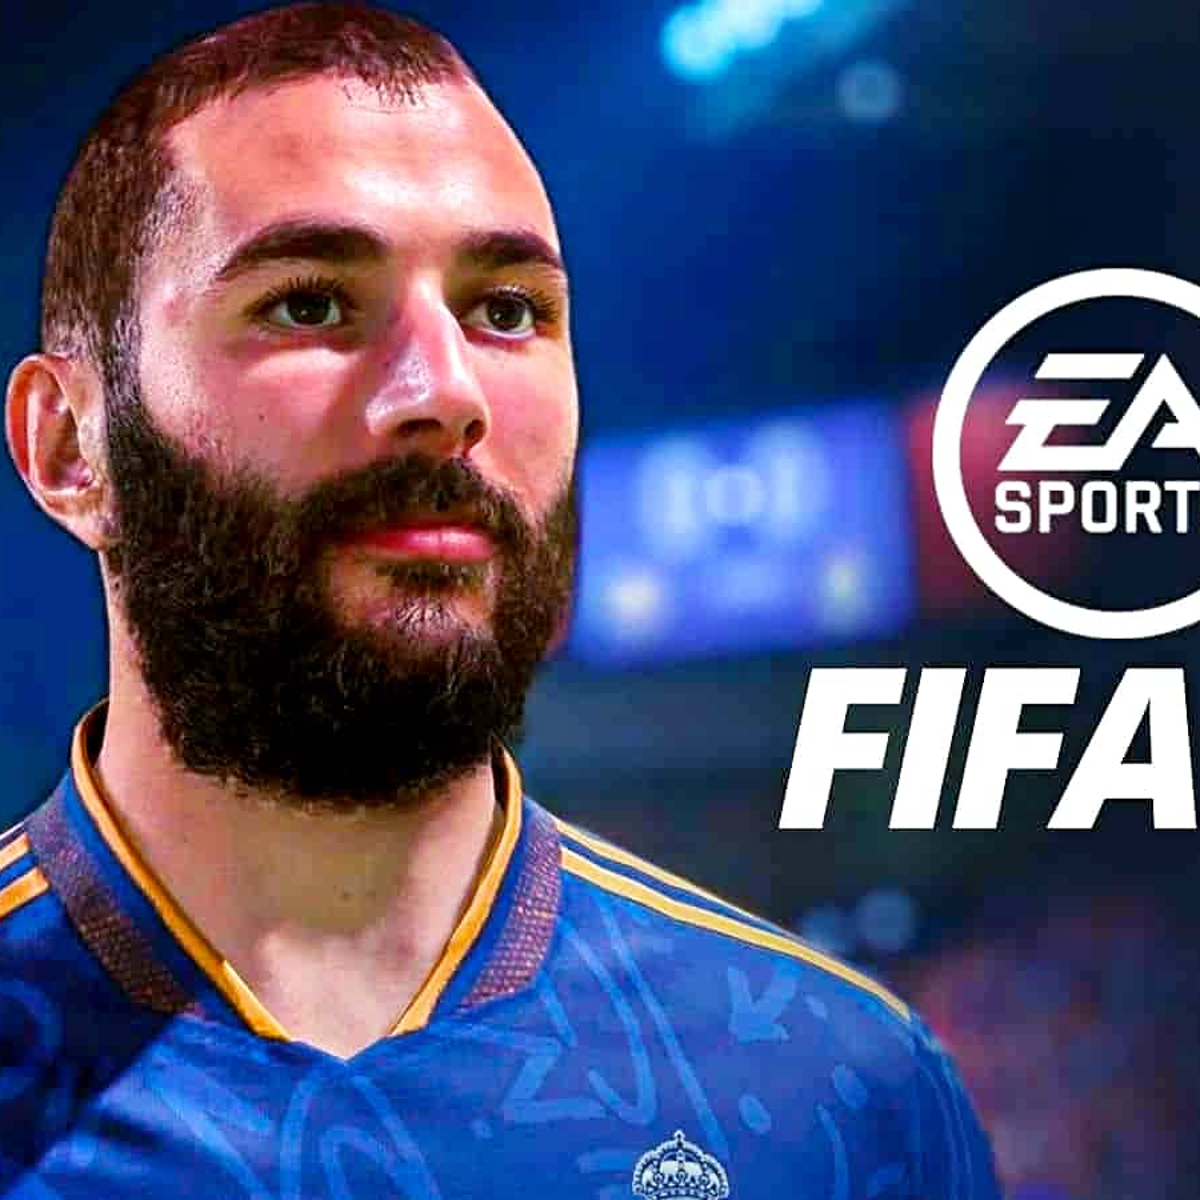 FIFA 23 Anti Cheat Error - como corrigir?